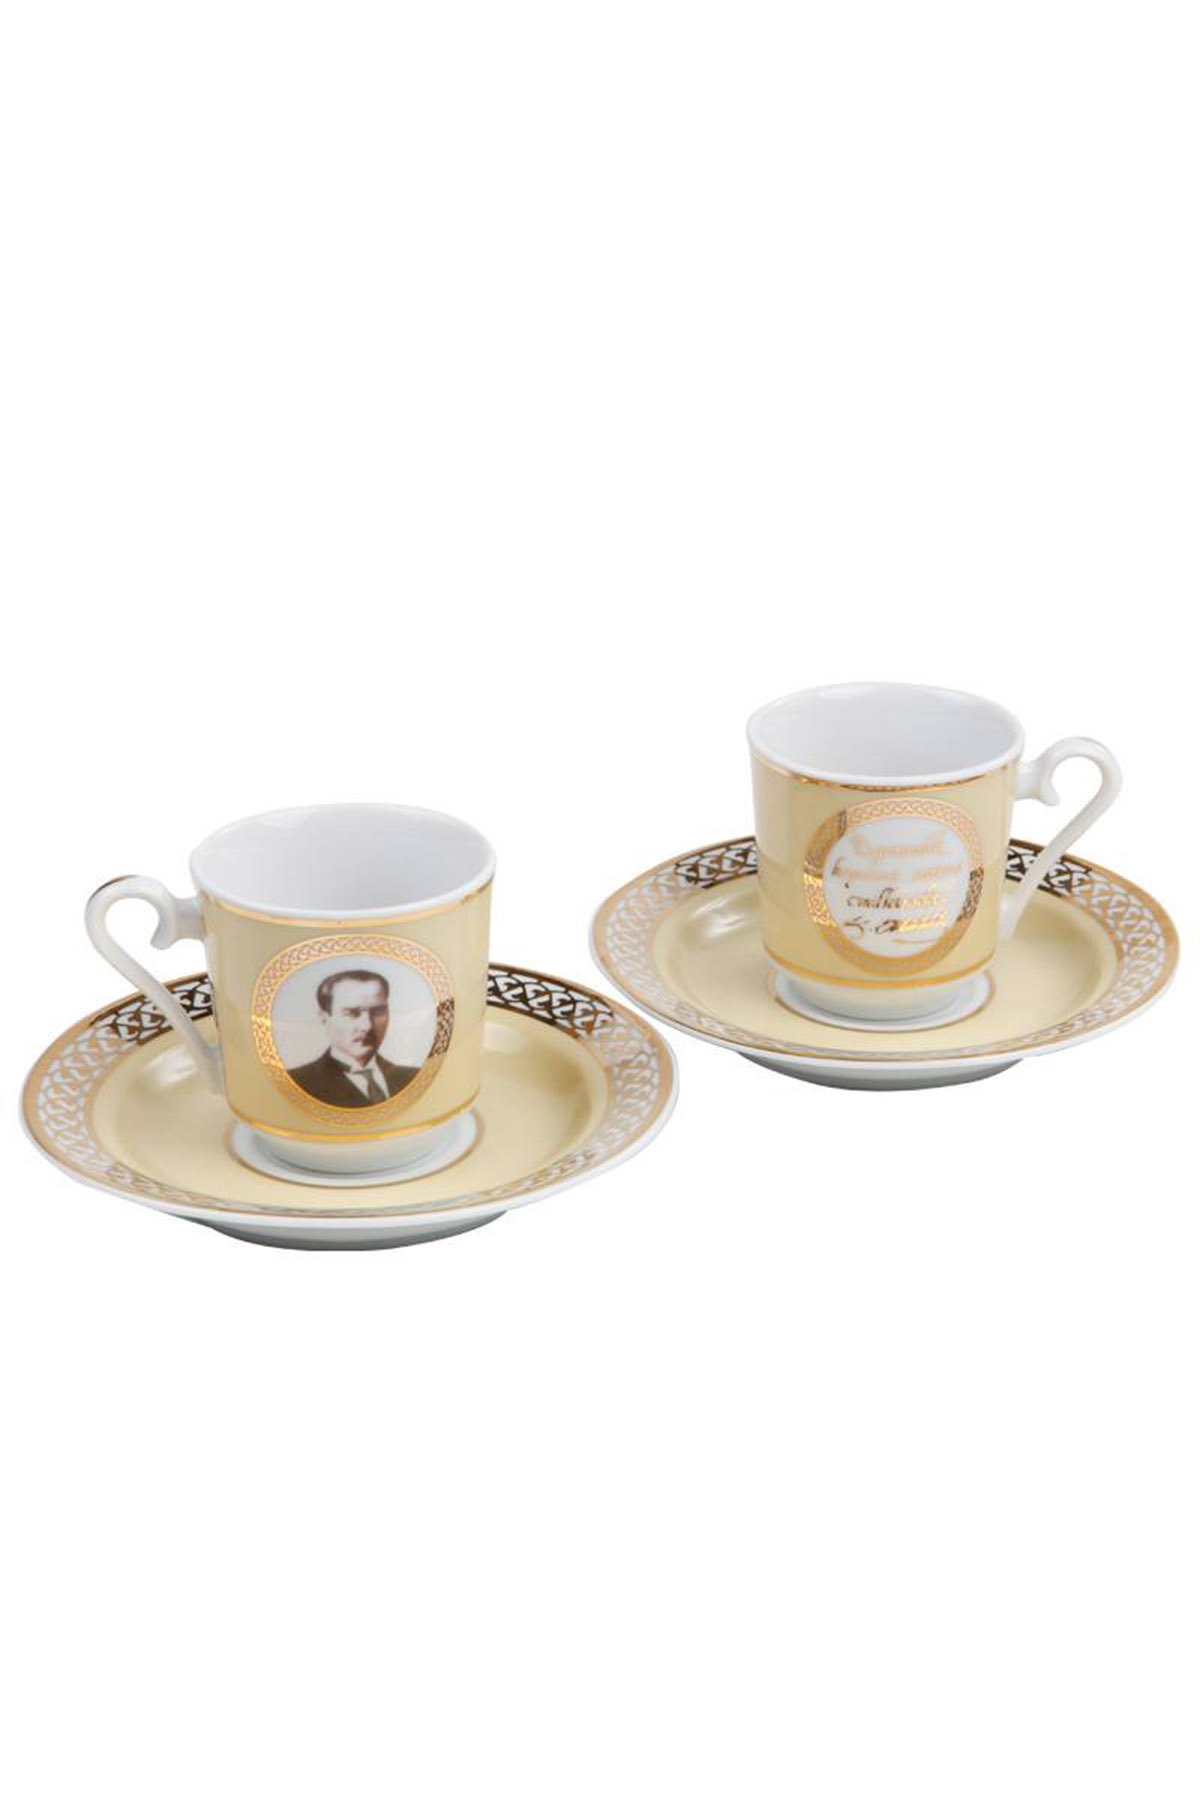 Kütahya Porselen Atatürk Altın Kahve Fincan Takımı